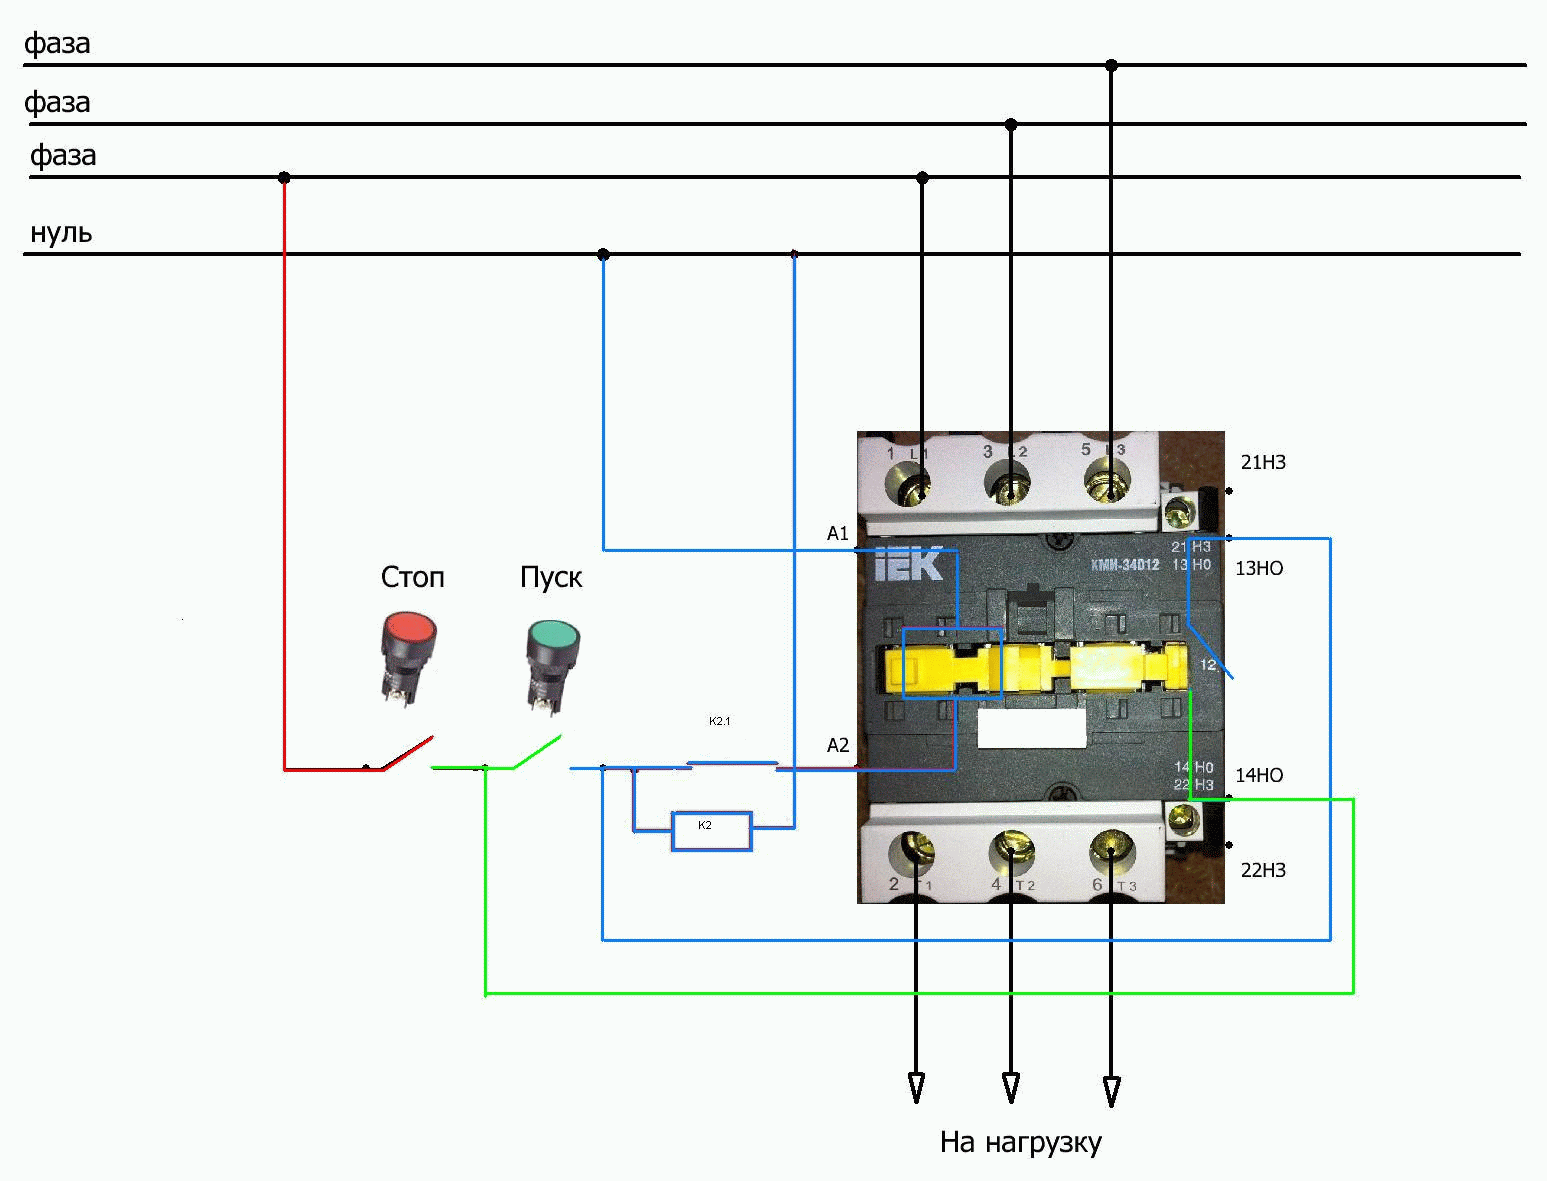 Схемы подключения магнитного пускателя на 220 в и 380 в + особенности самостоятельного подключения